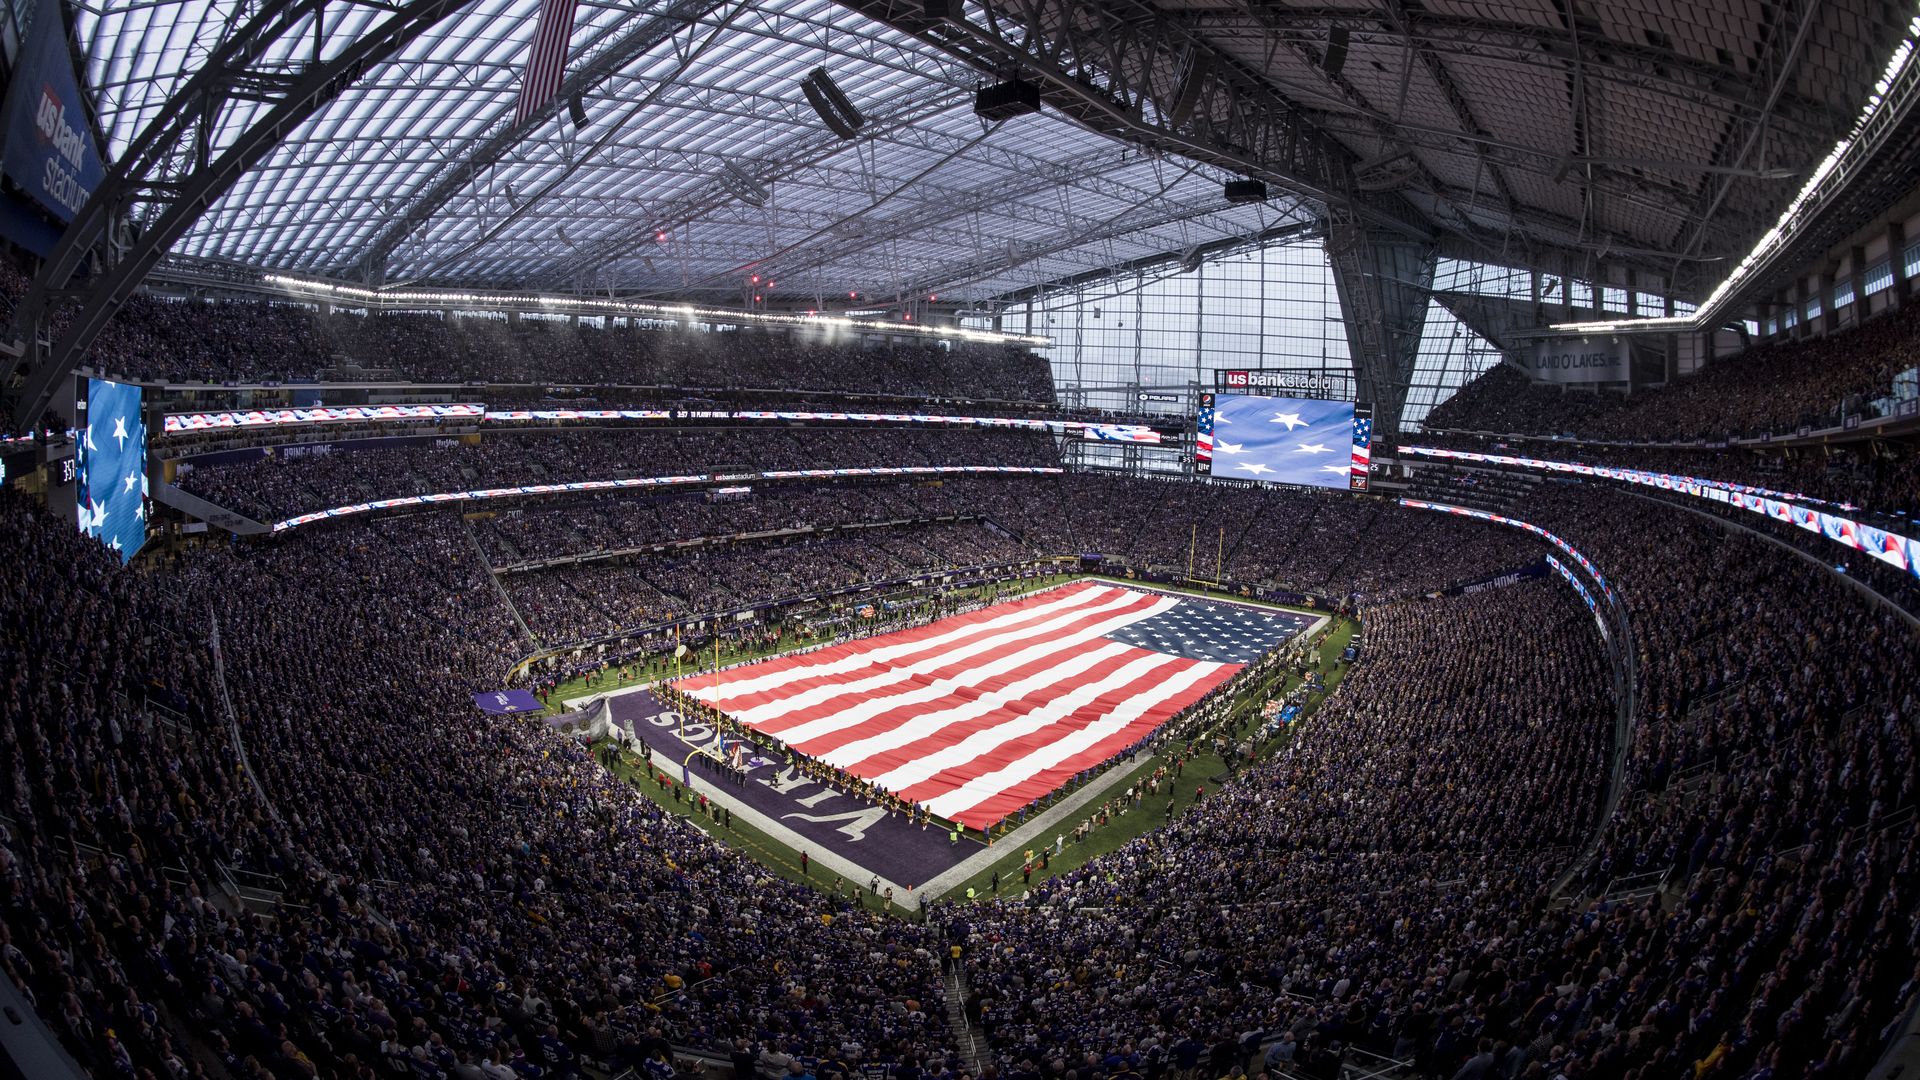 The American flag unfurled at last week's Vikings game